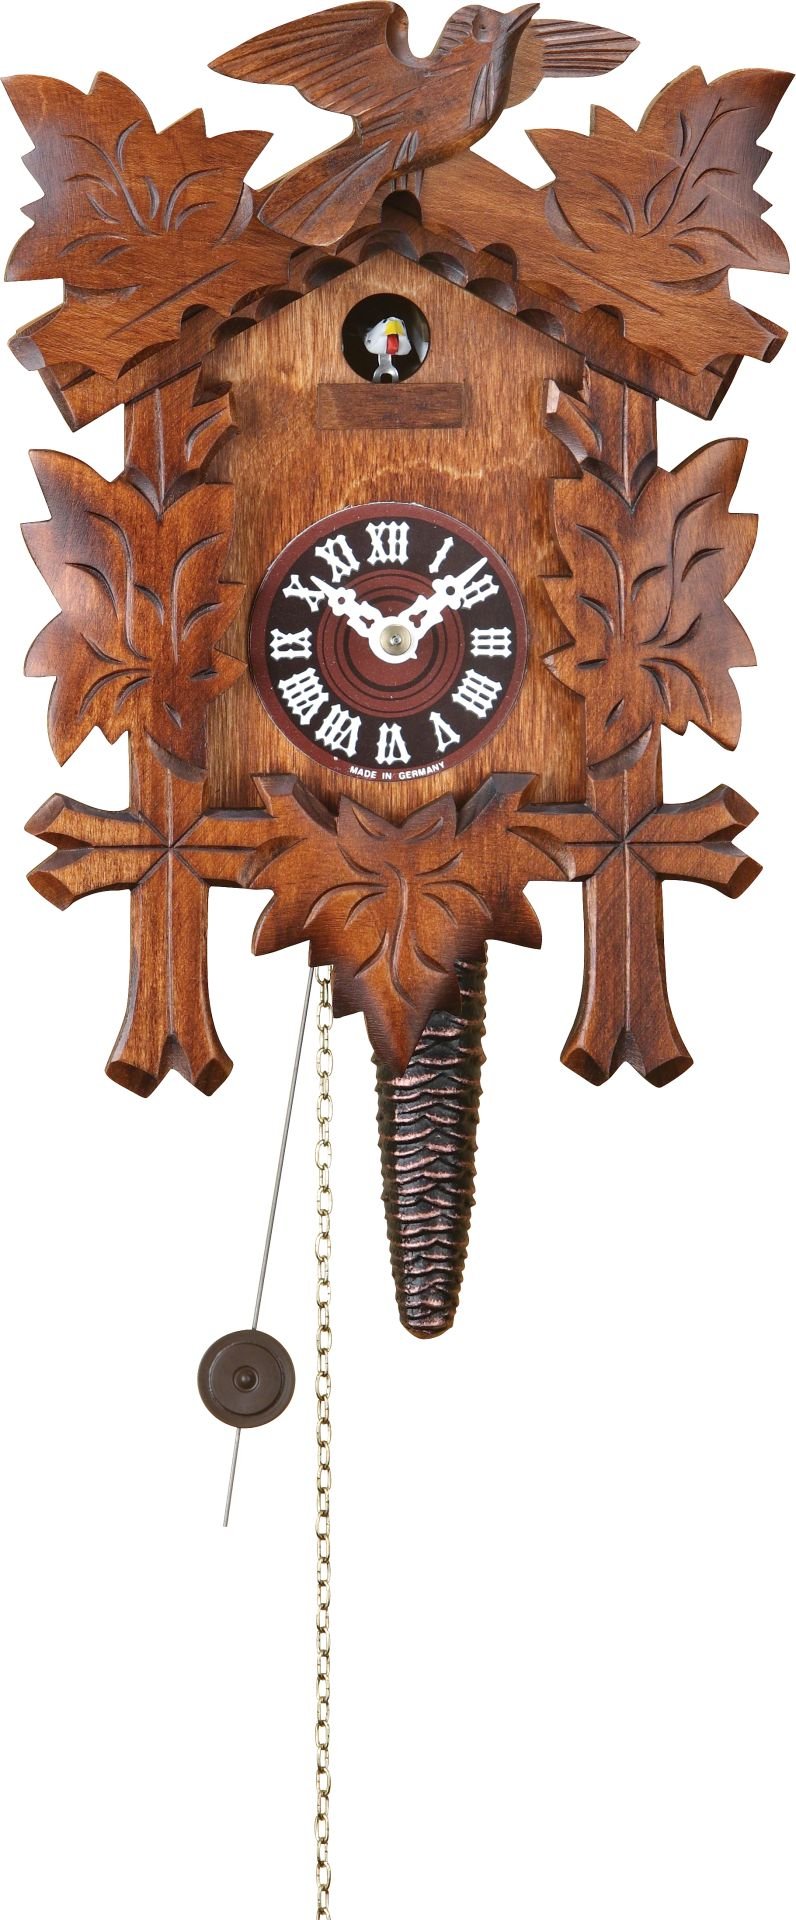 Reloj de cuco estilo “Madera tallada” movimiento del elevador de cadena 24cm de Trenkle Uhren